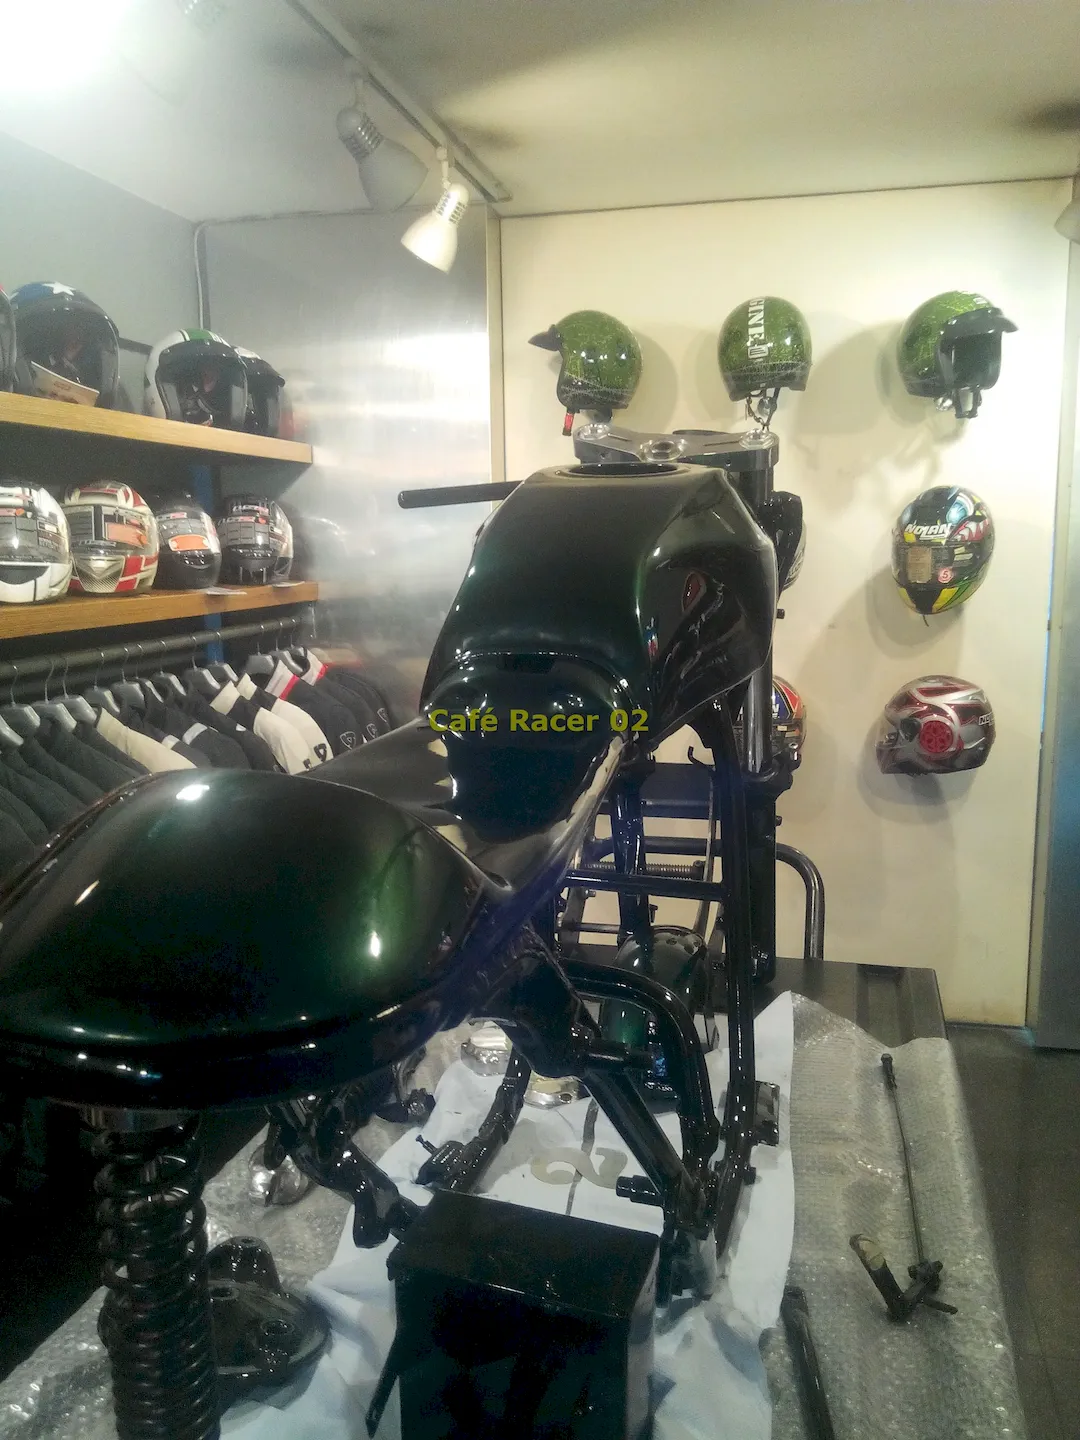 Café Racer 02 motosiklet-boyadan geliş- kuyruk ve depo şasiye yerleştirilmiş halde